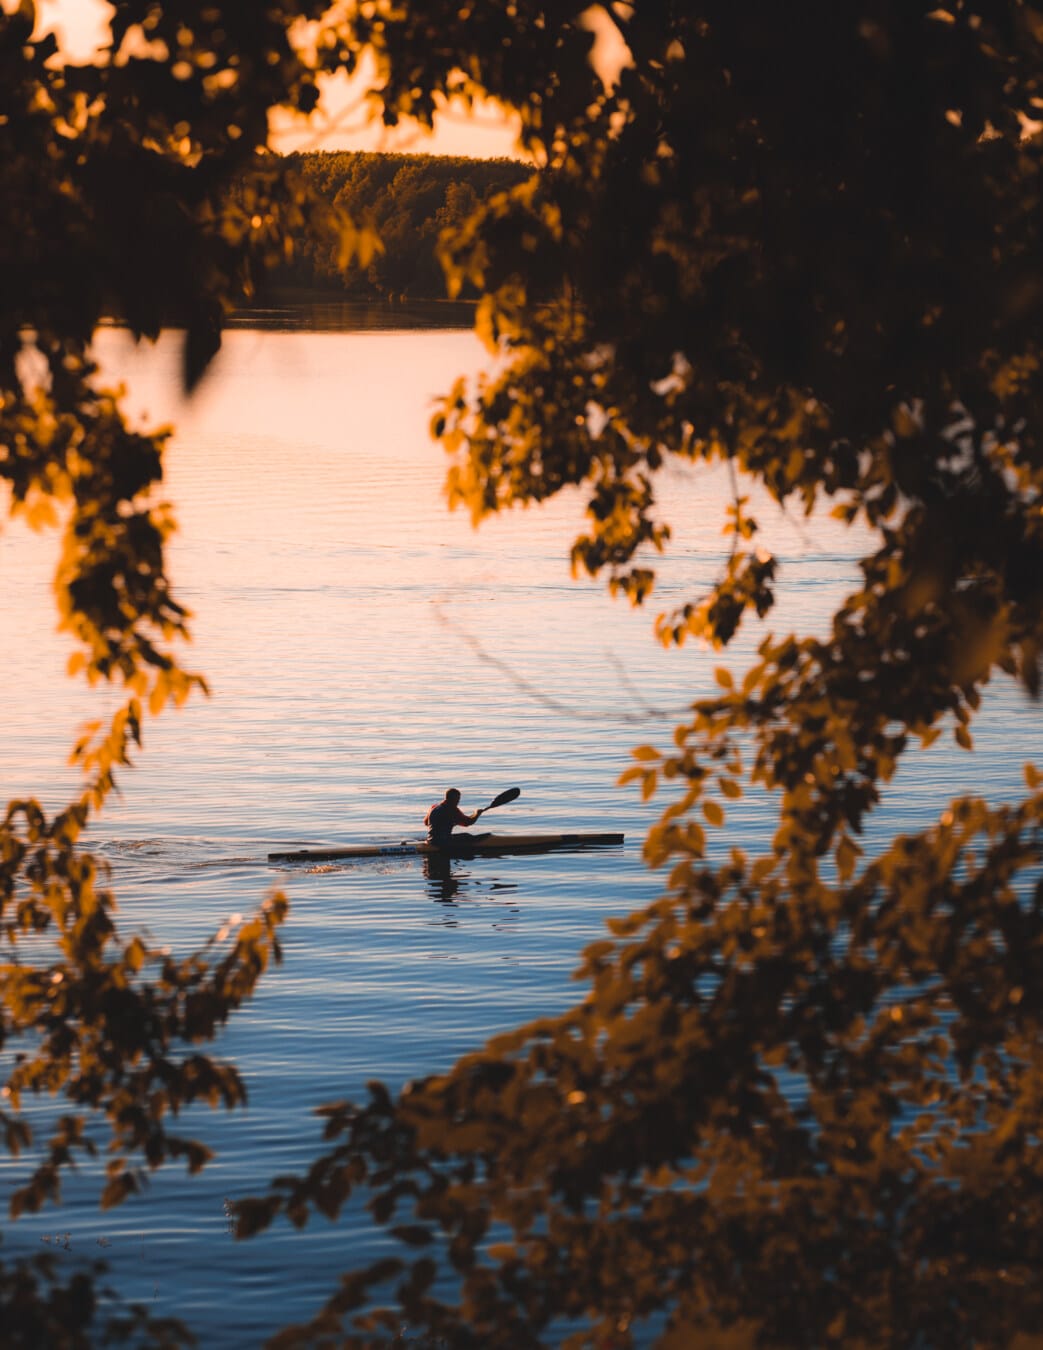 kayaking, lakeside, autumn season, yellowish brown, leaves, water, lake, dawn, reflection, outdoors